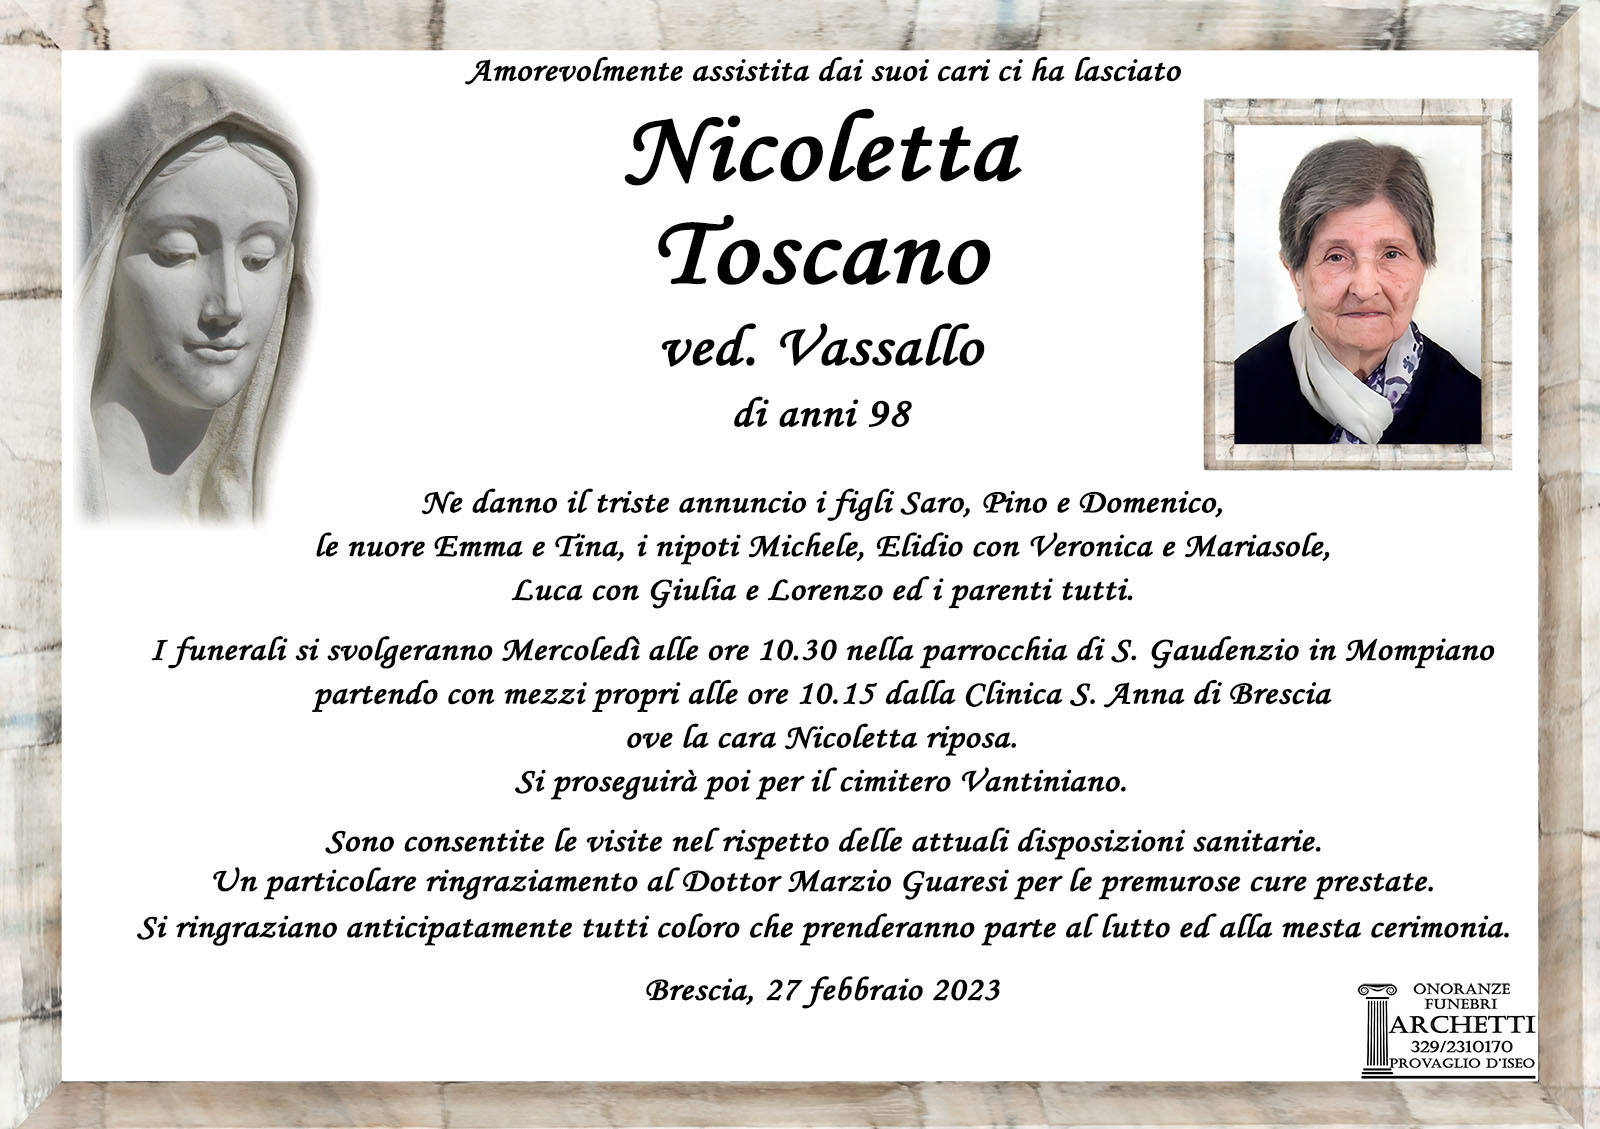 Onoranze Funebri Archetti - Nicoletta Toscano di anni 98 - 27 Febbraio 2023